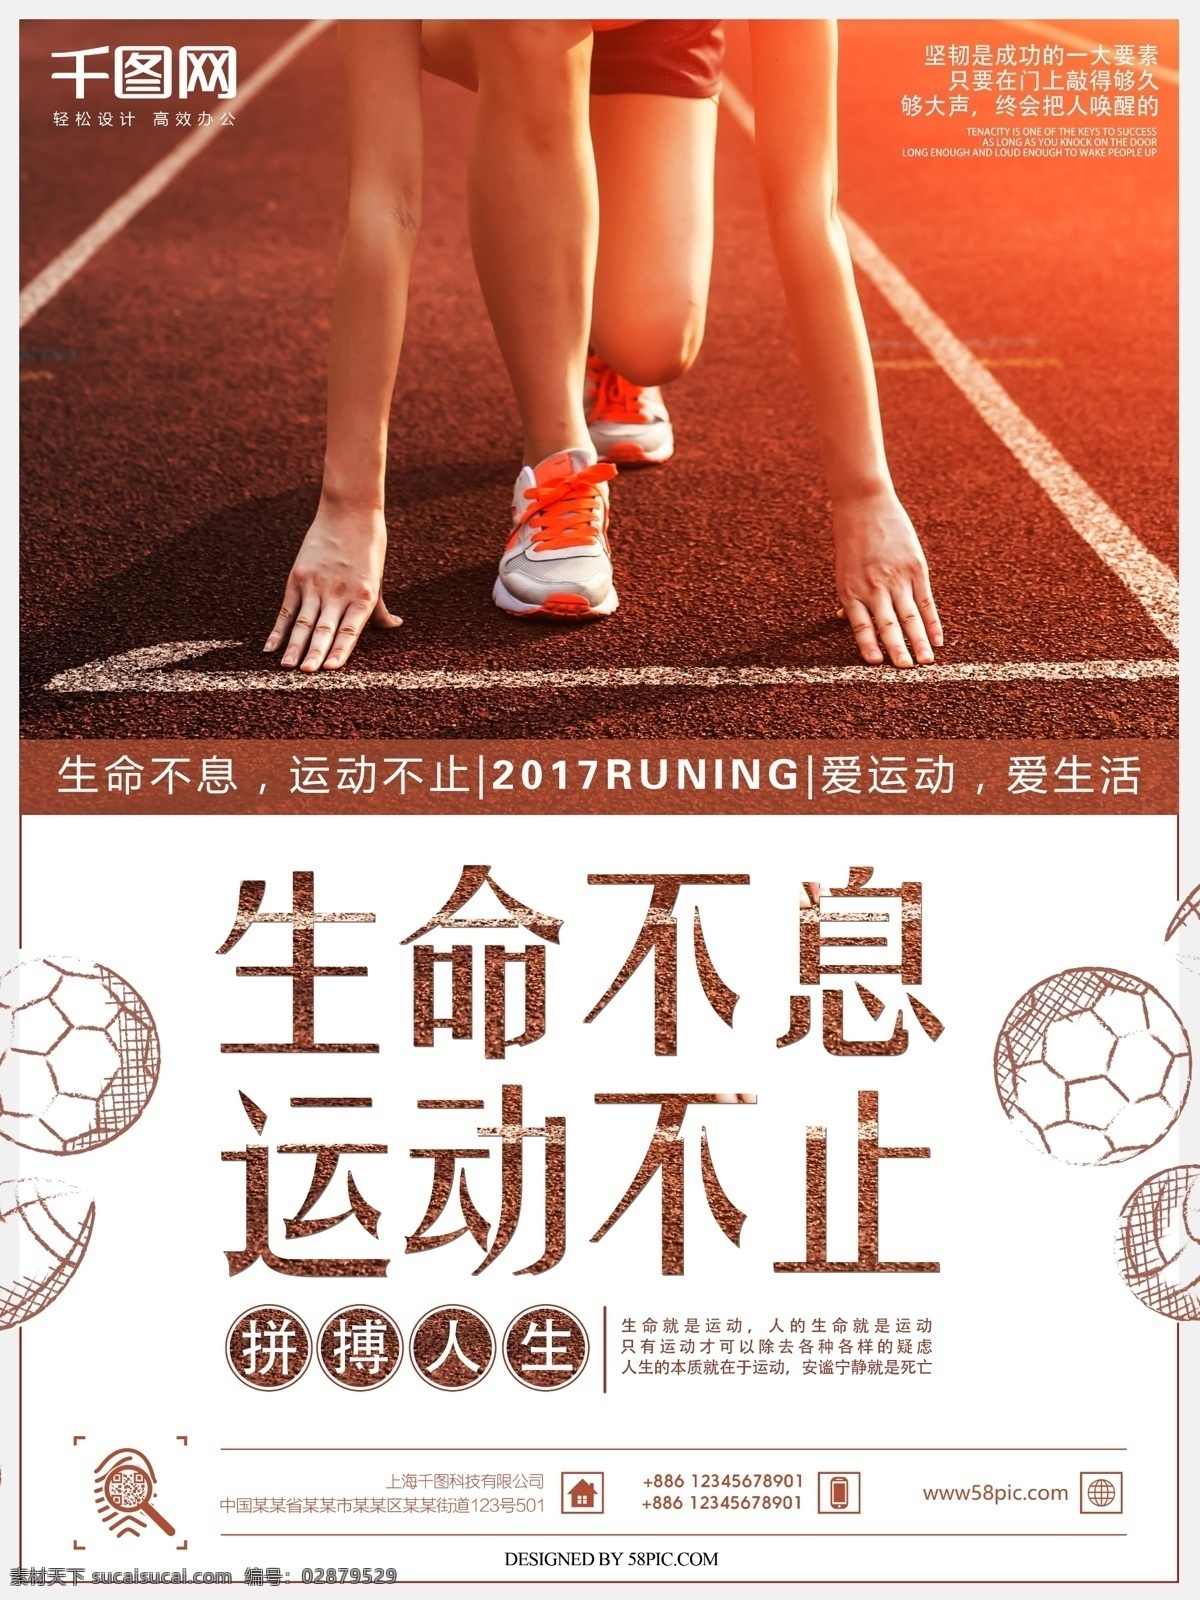 健康 运动 拼搏 精神 体育 运动海报 生命不息 运动不止 拼搏人生 跑步 比赛